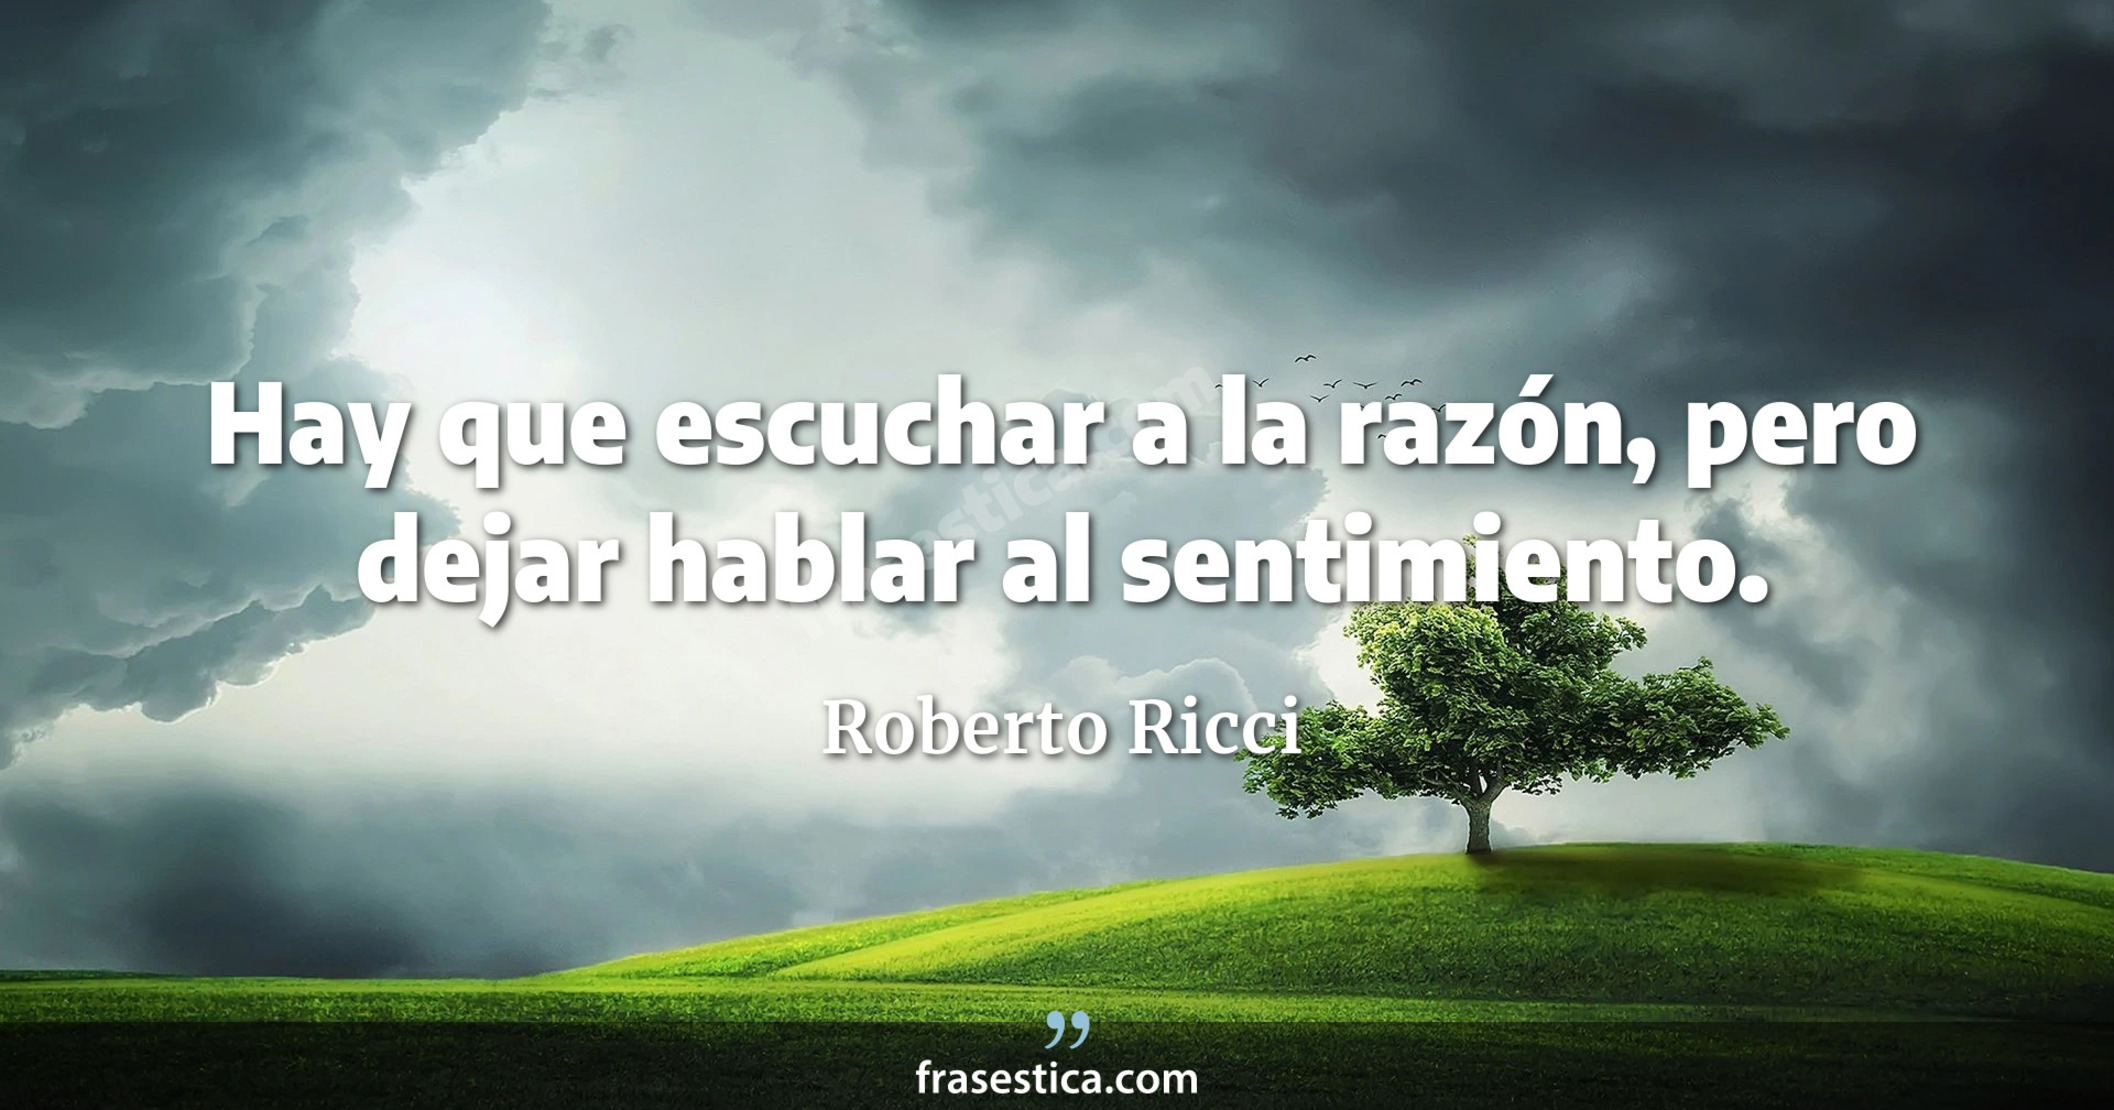 Hay que escuchar a la razón, pero dejar hablar al sentimiento. - Roberto Ricci